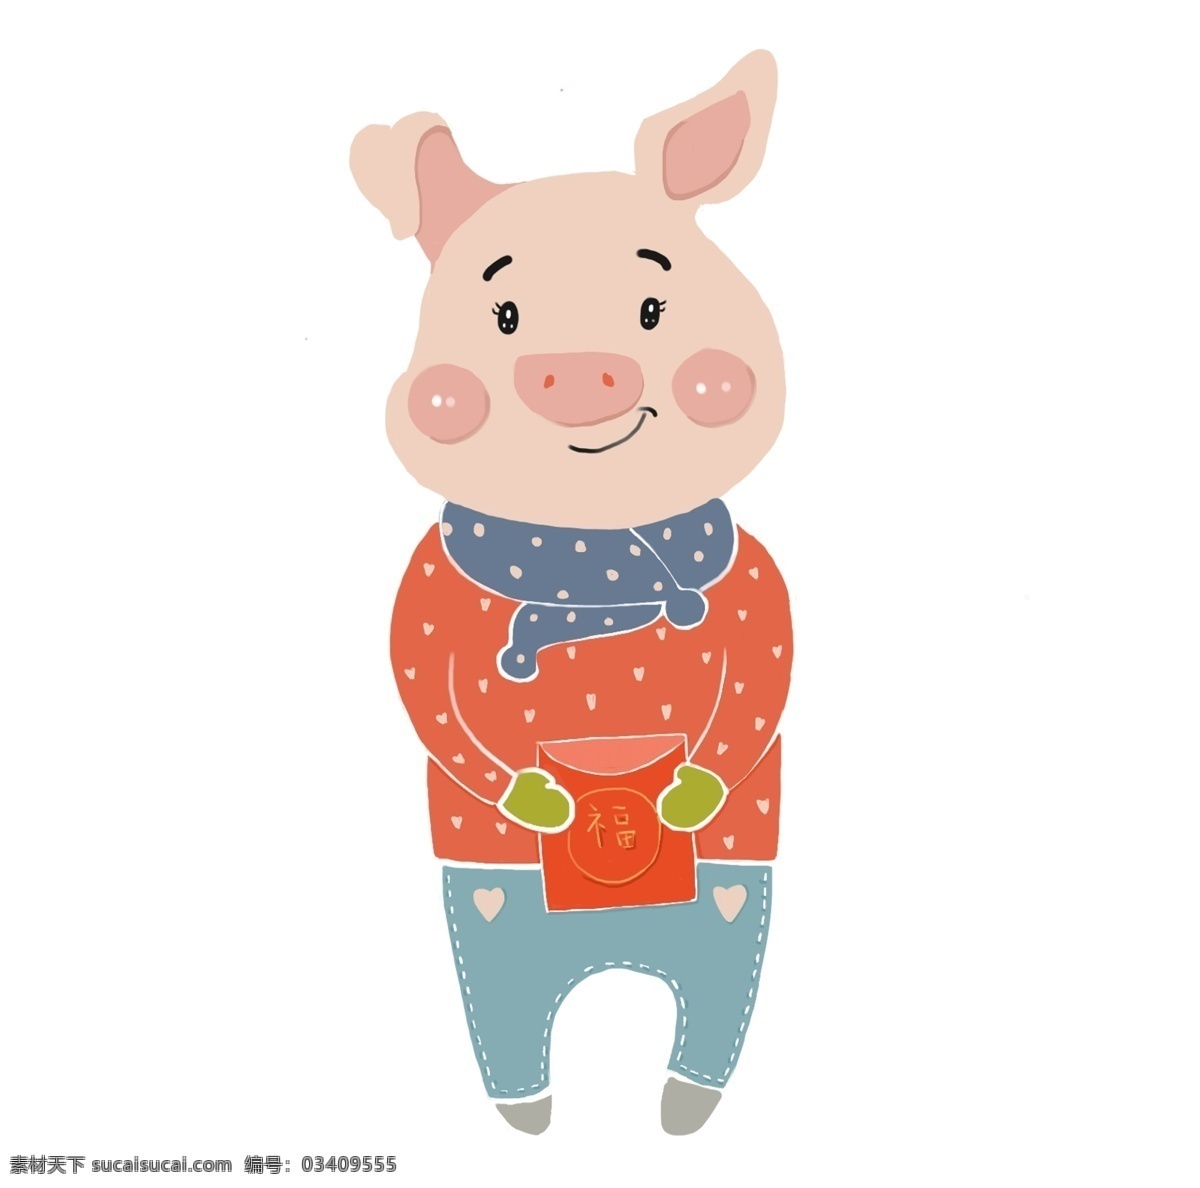 小 猪 发红 包 恭喜发财 红包 手绘图 喜庆 可爱猪 猪年 大红包 可爱小猪